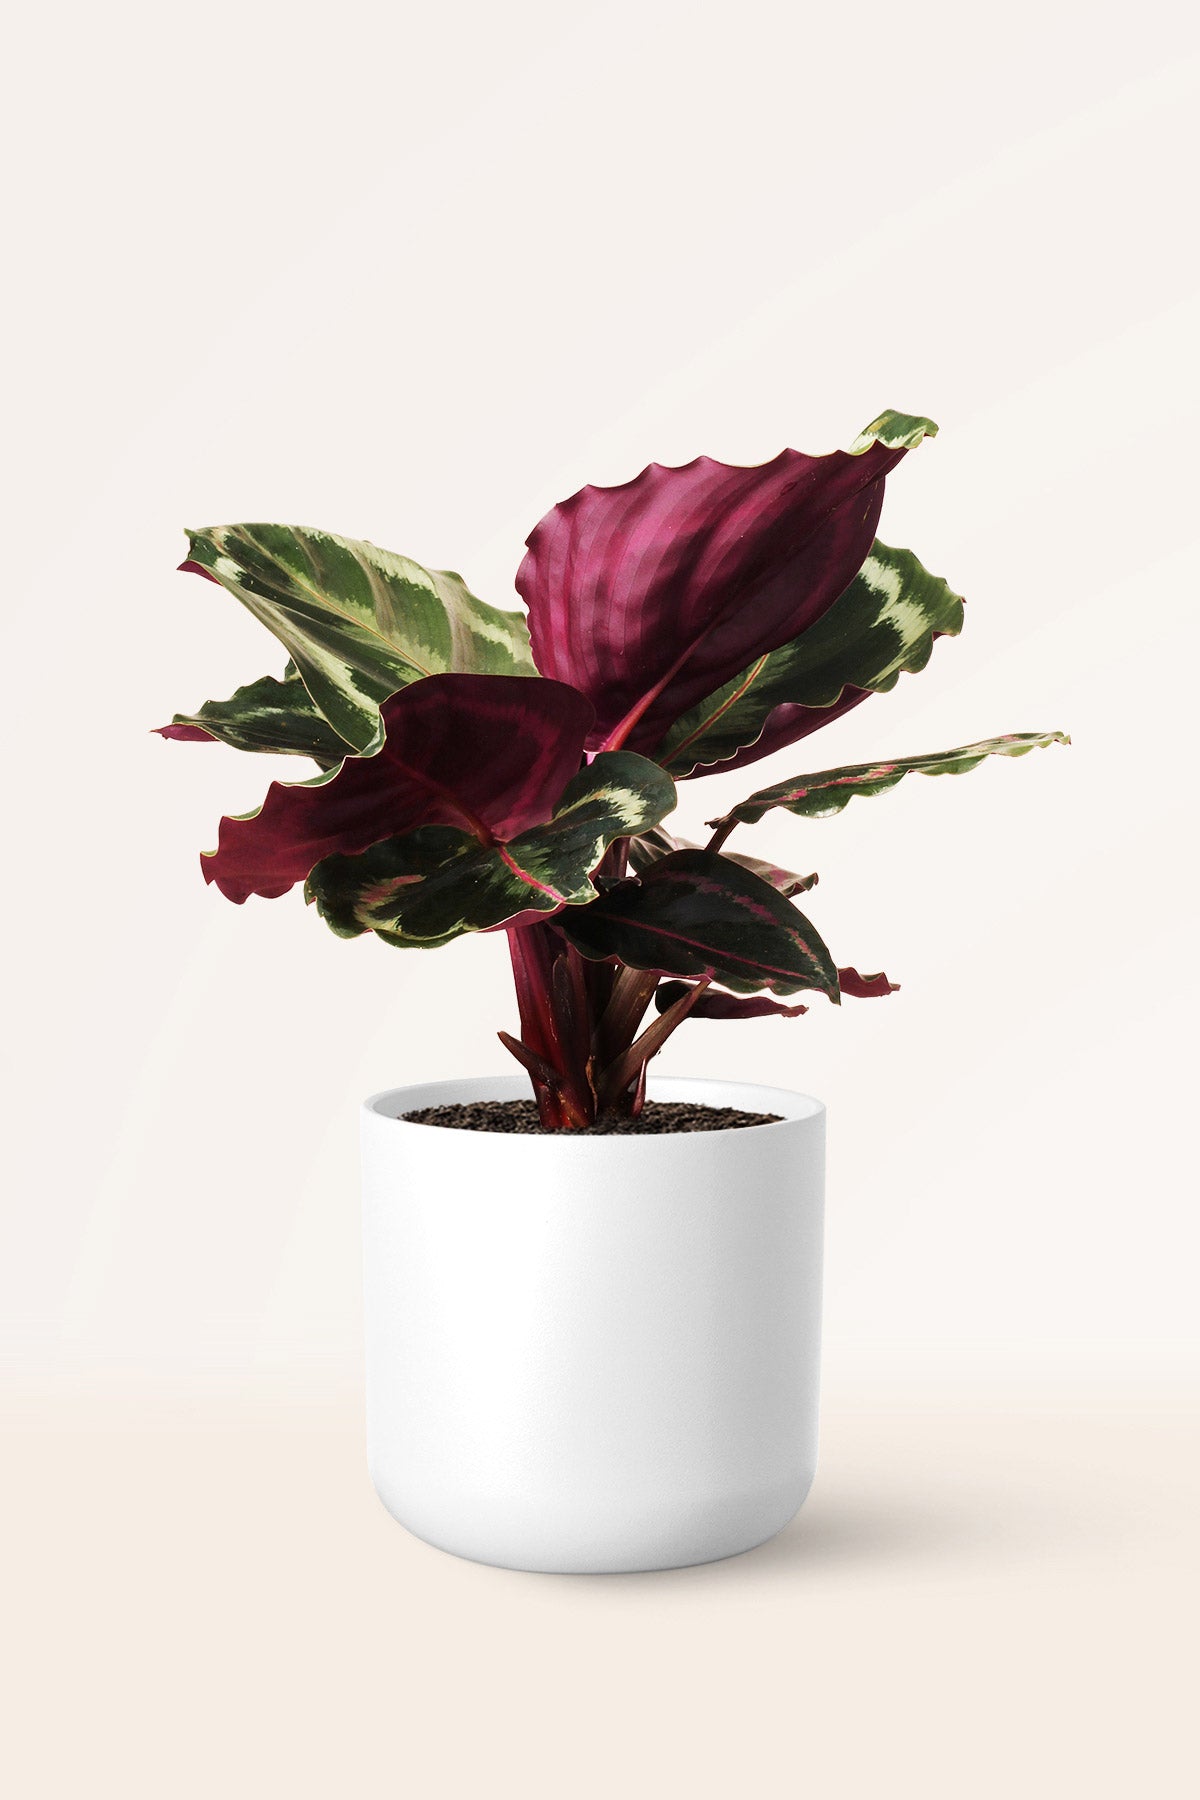 Calathea Medallion | Comprar plantas online | Plantas de interior |  APRILPLANTS